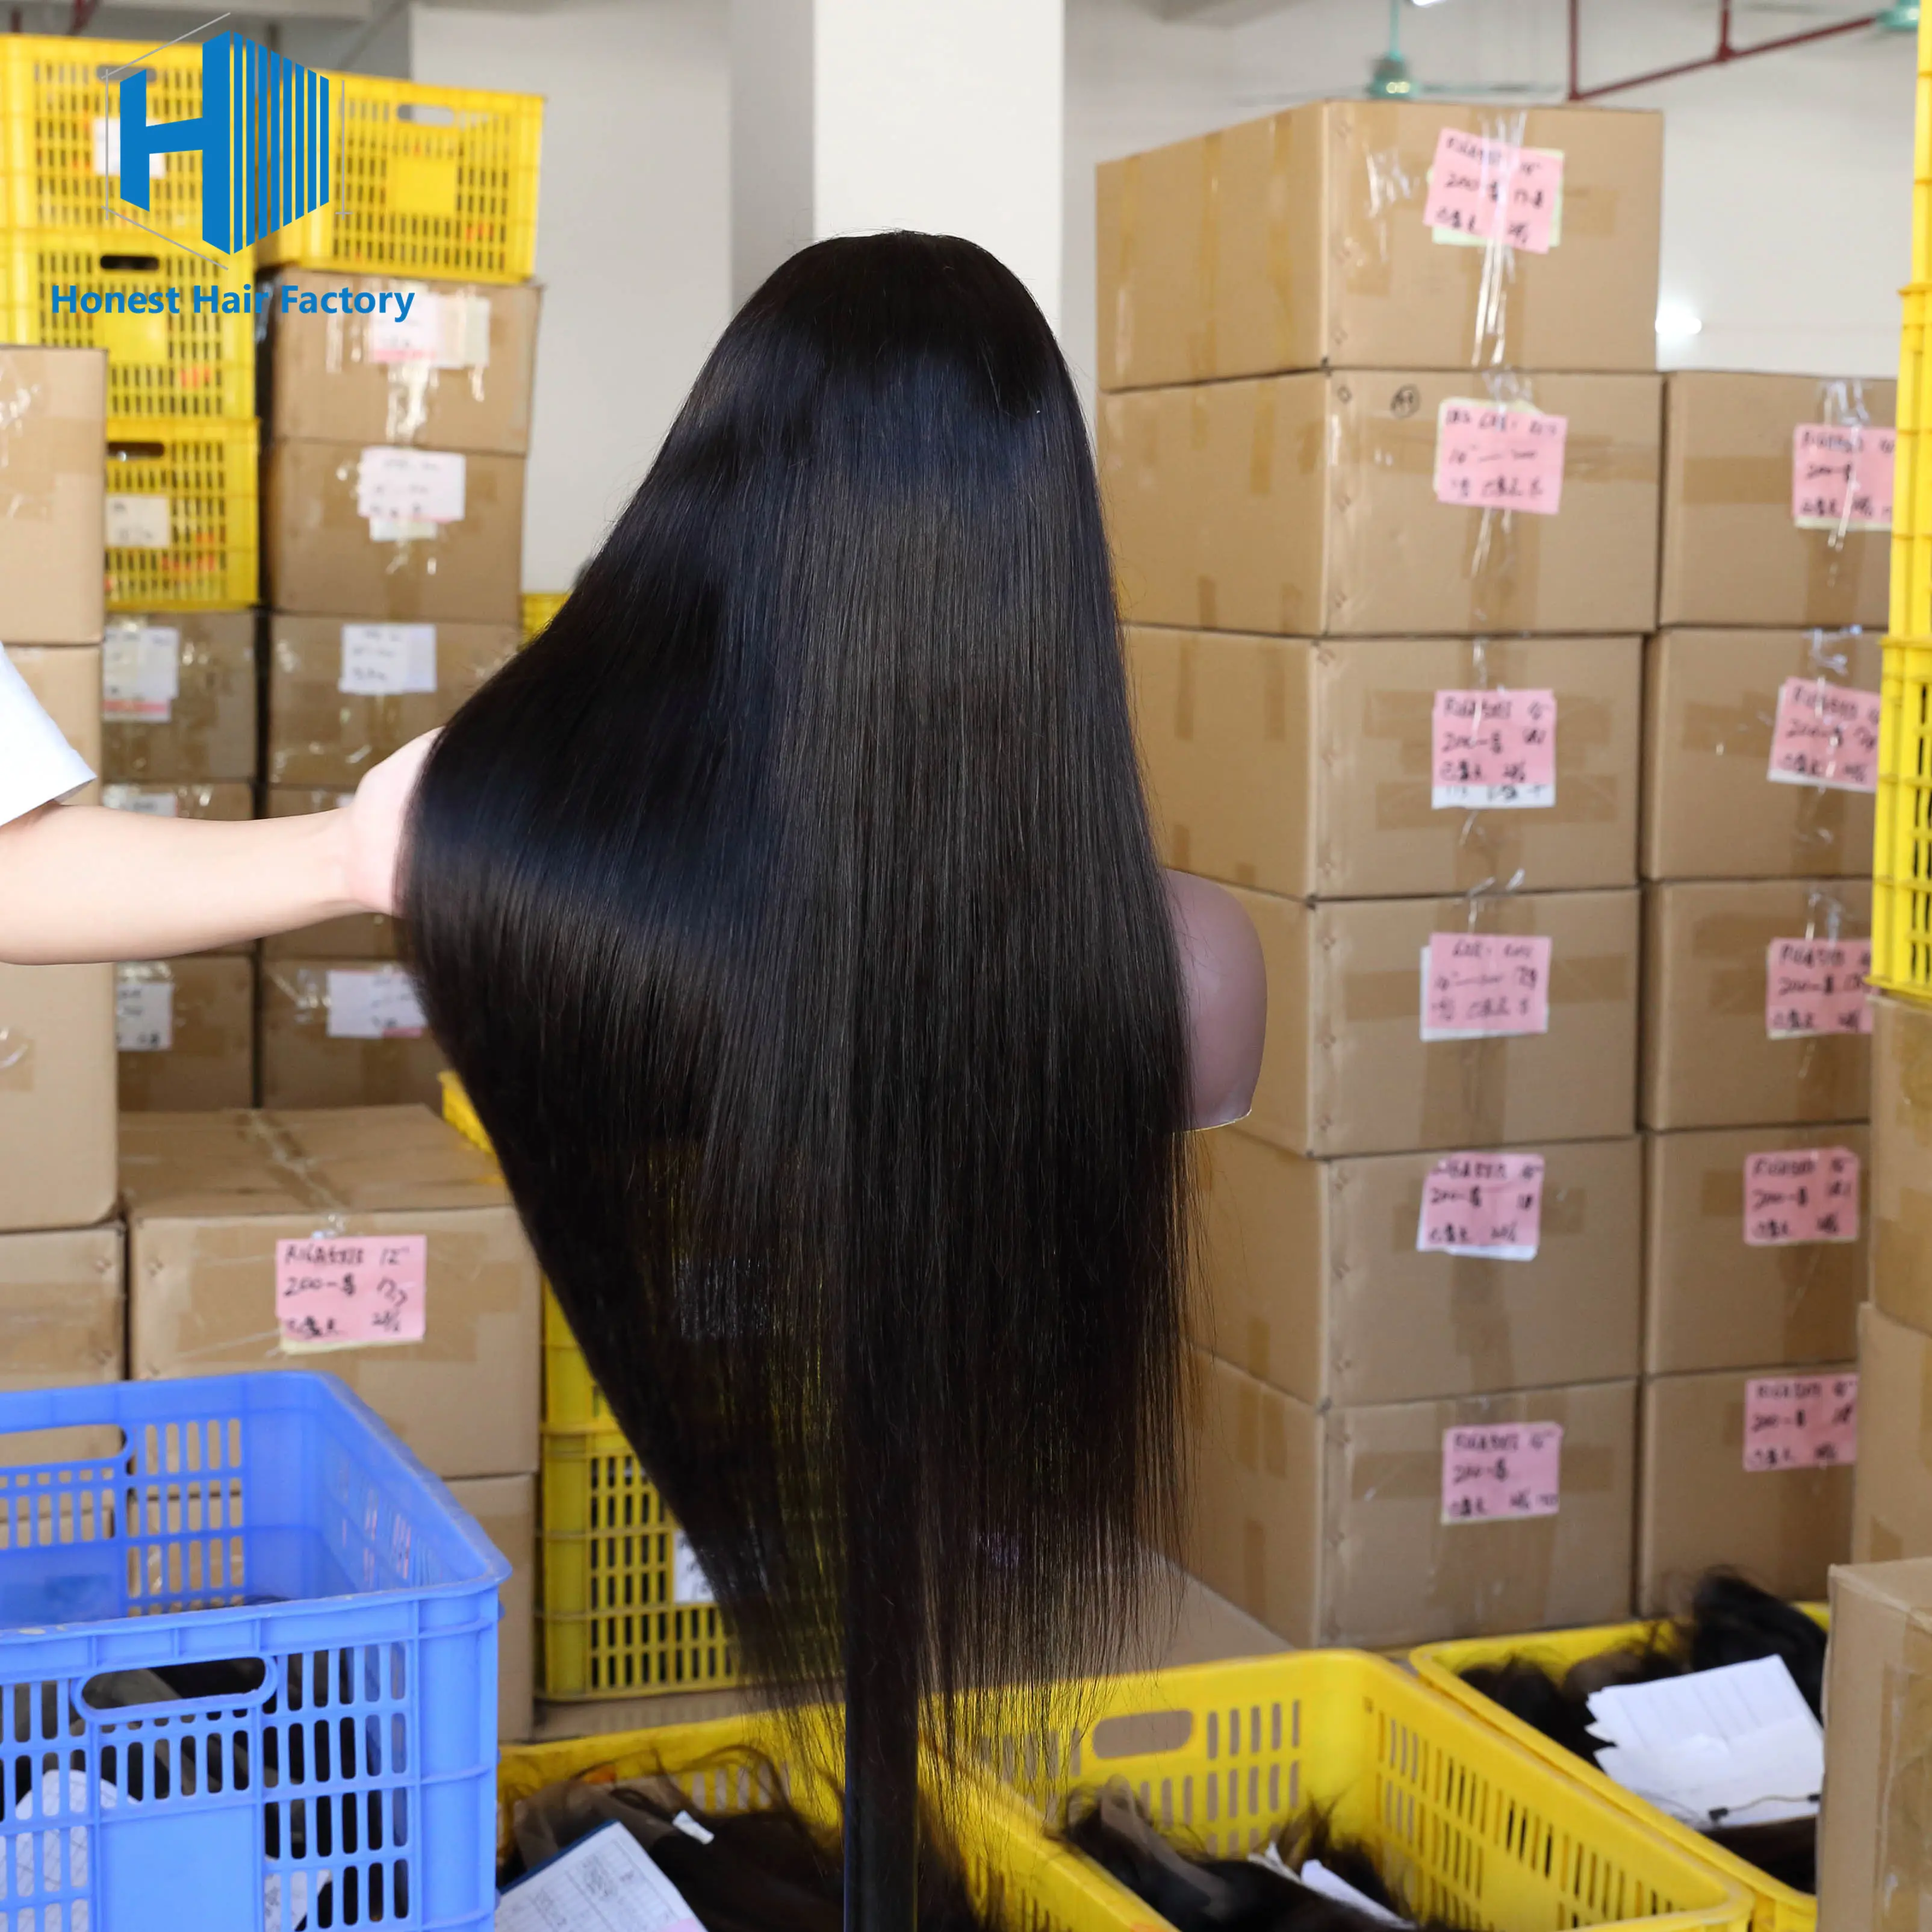 Produsen Cina Handal Grosir Jujur Kualitas Terbaik 8a Wig Rambut Manusia